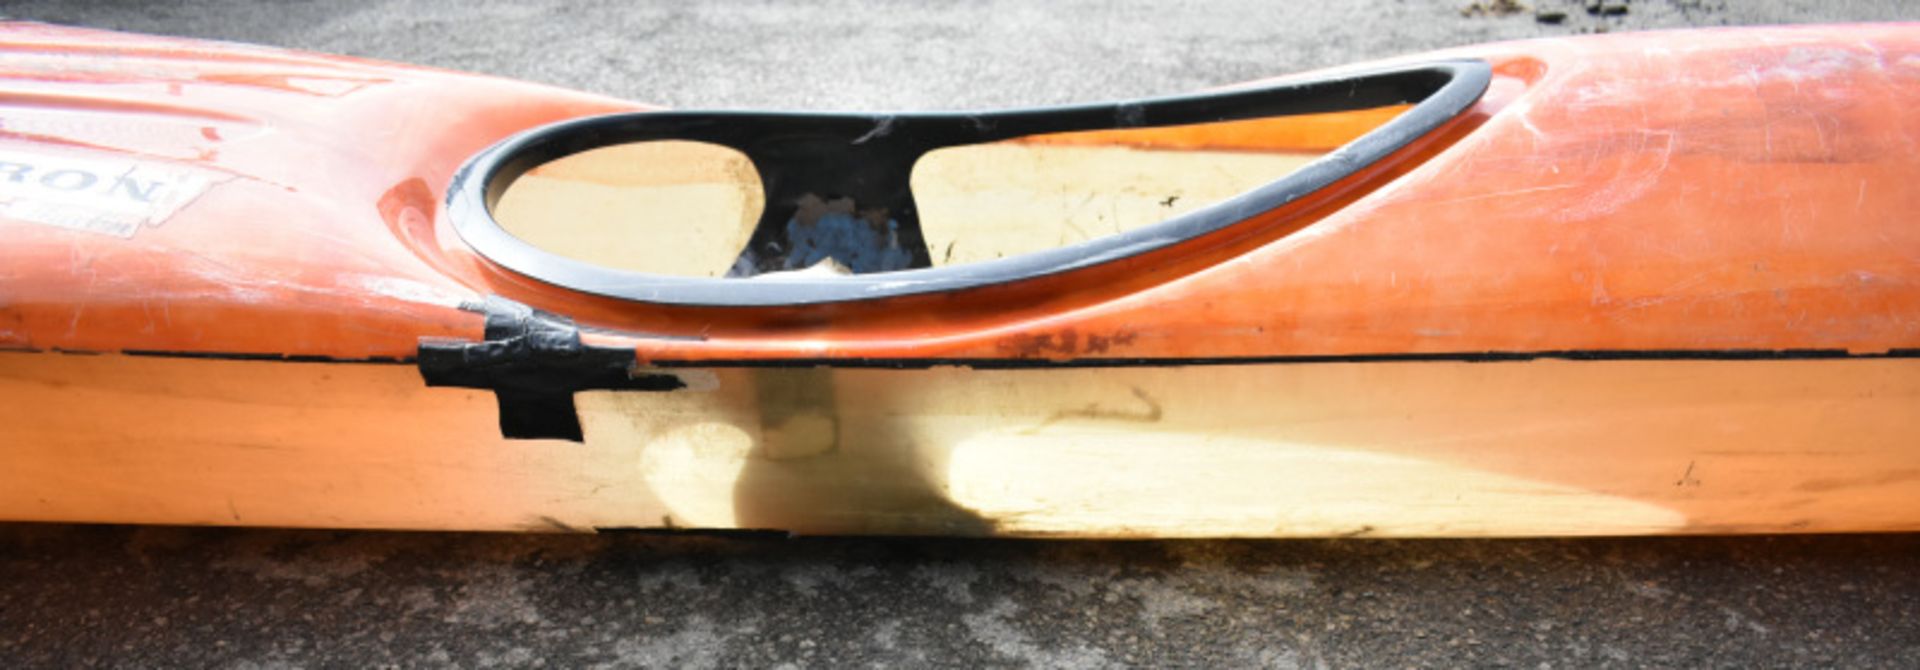 Baron Marlin Kayak - orange - no paddles - Image 7 of 13